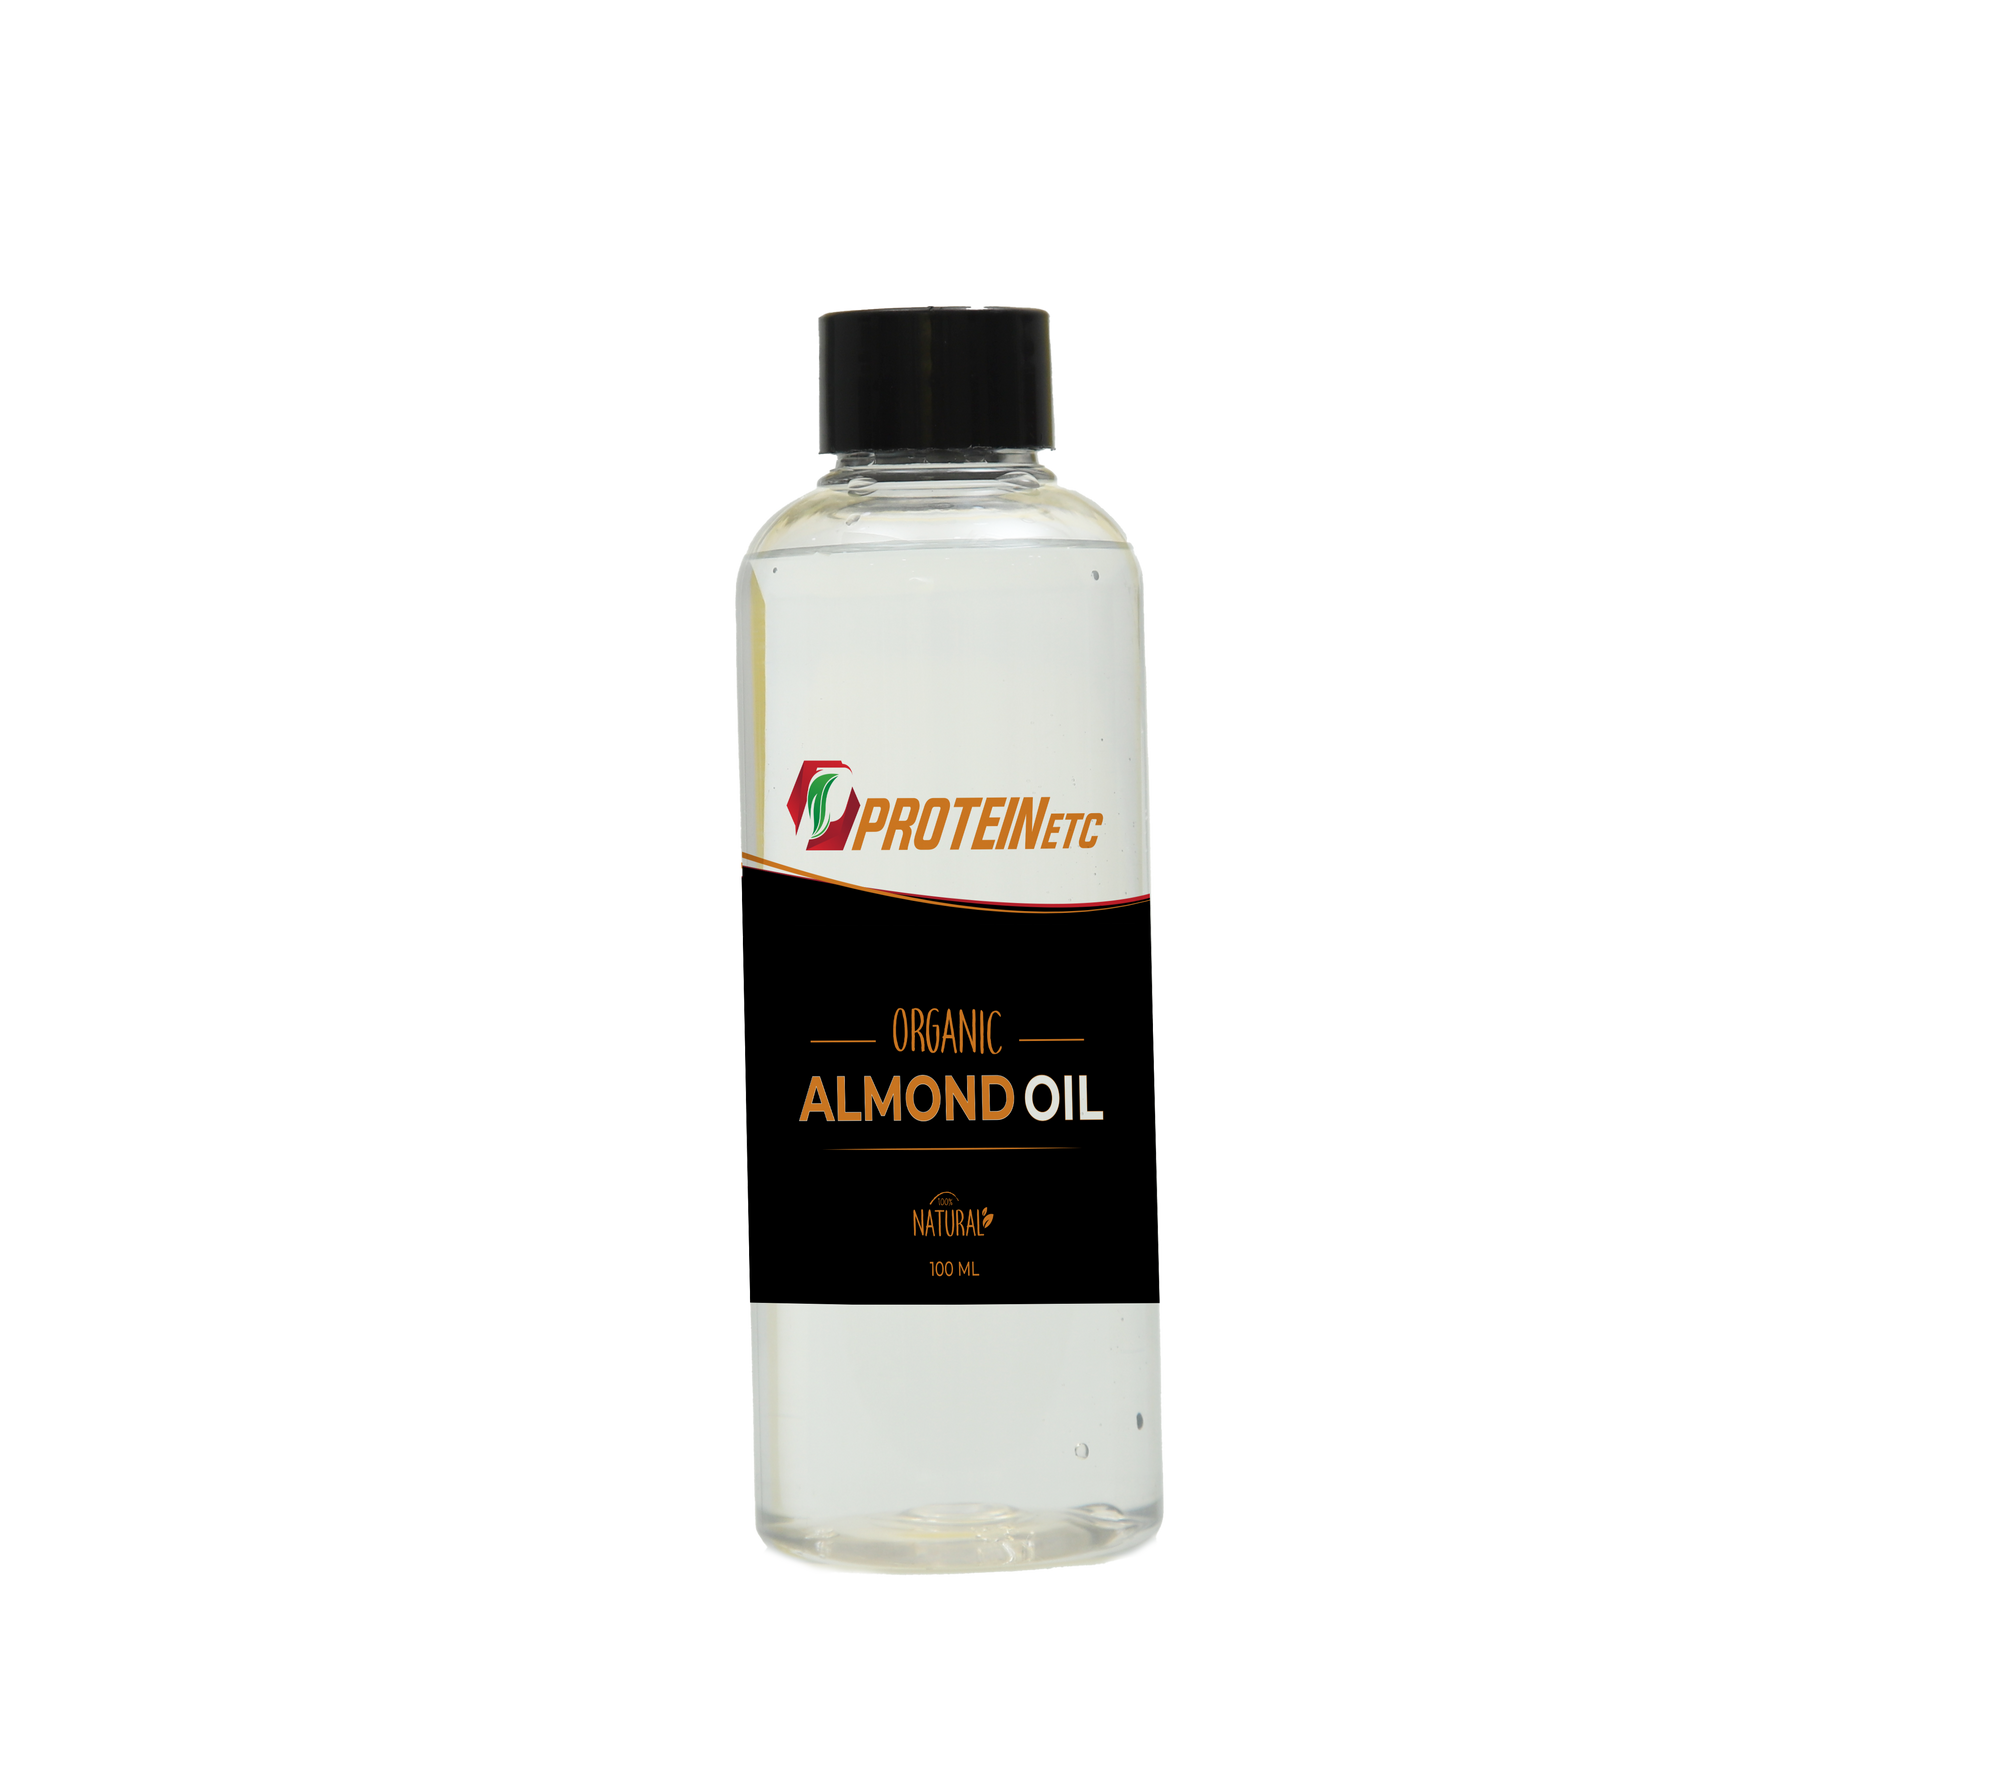 Cold Pressed Almond Oil